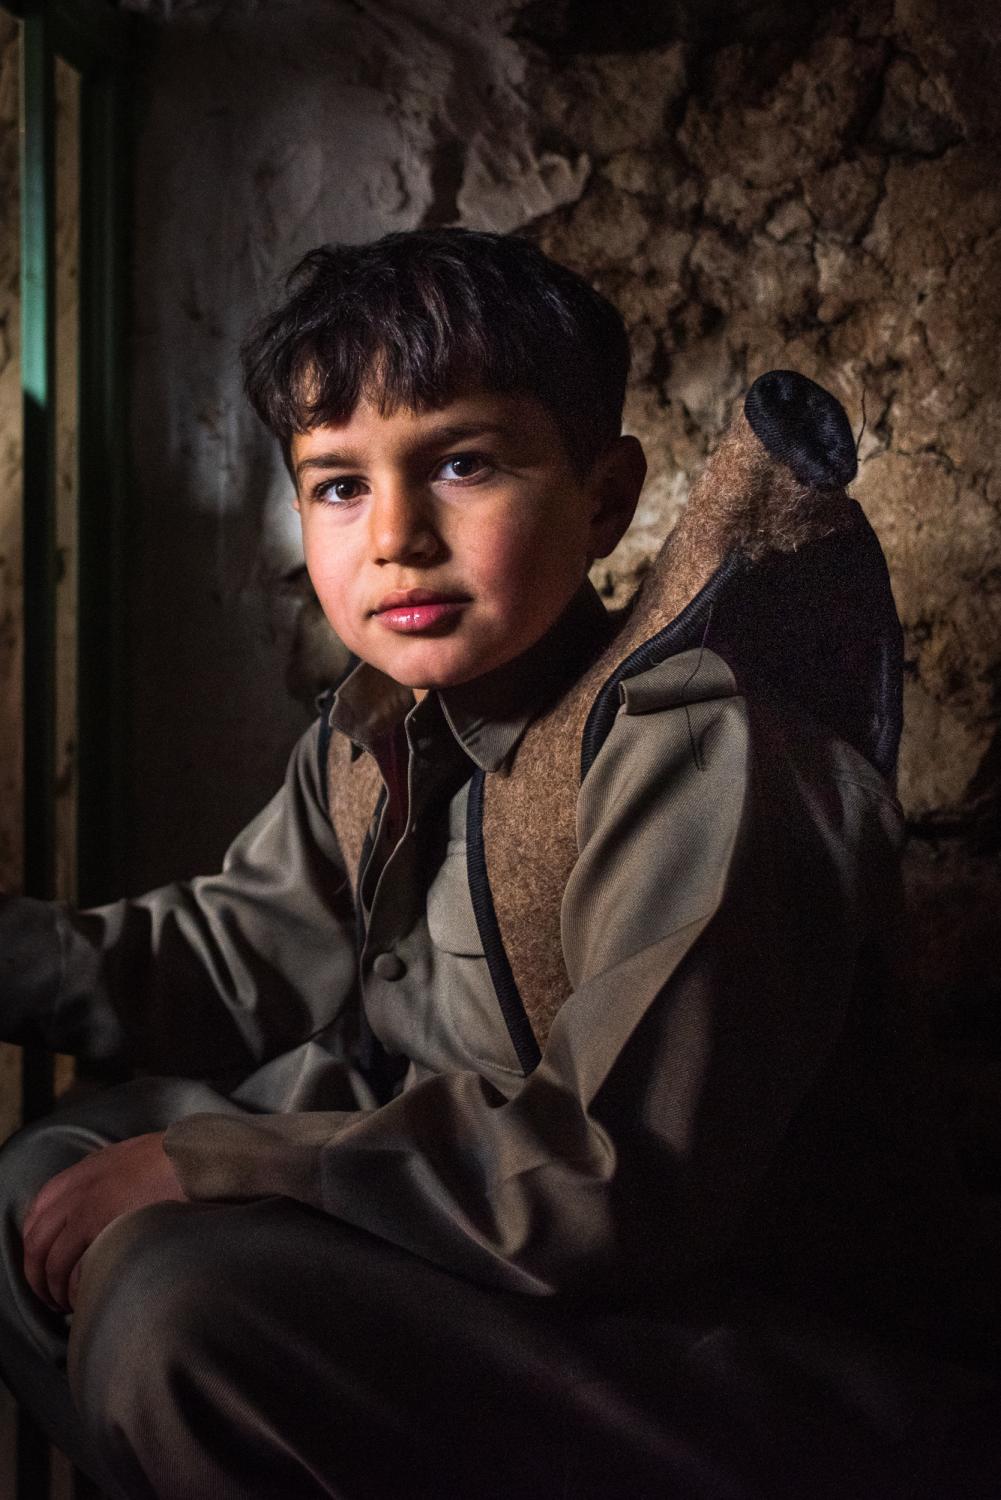 HEWRAMAN-TAKHT, IRAN &ndash; JANUARY 30, 2019: A Kurdish boy wearing traditional Kurdish...